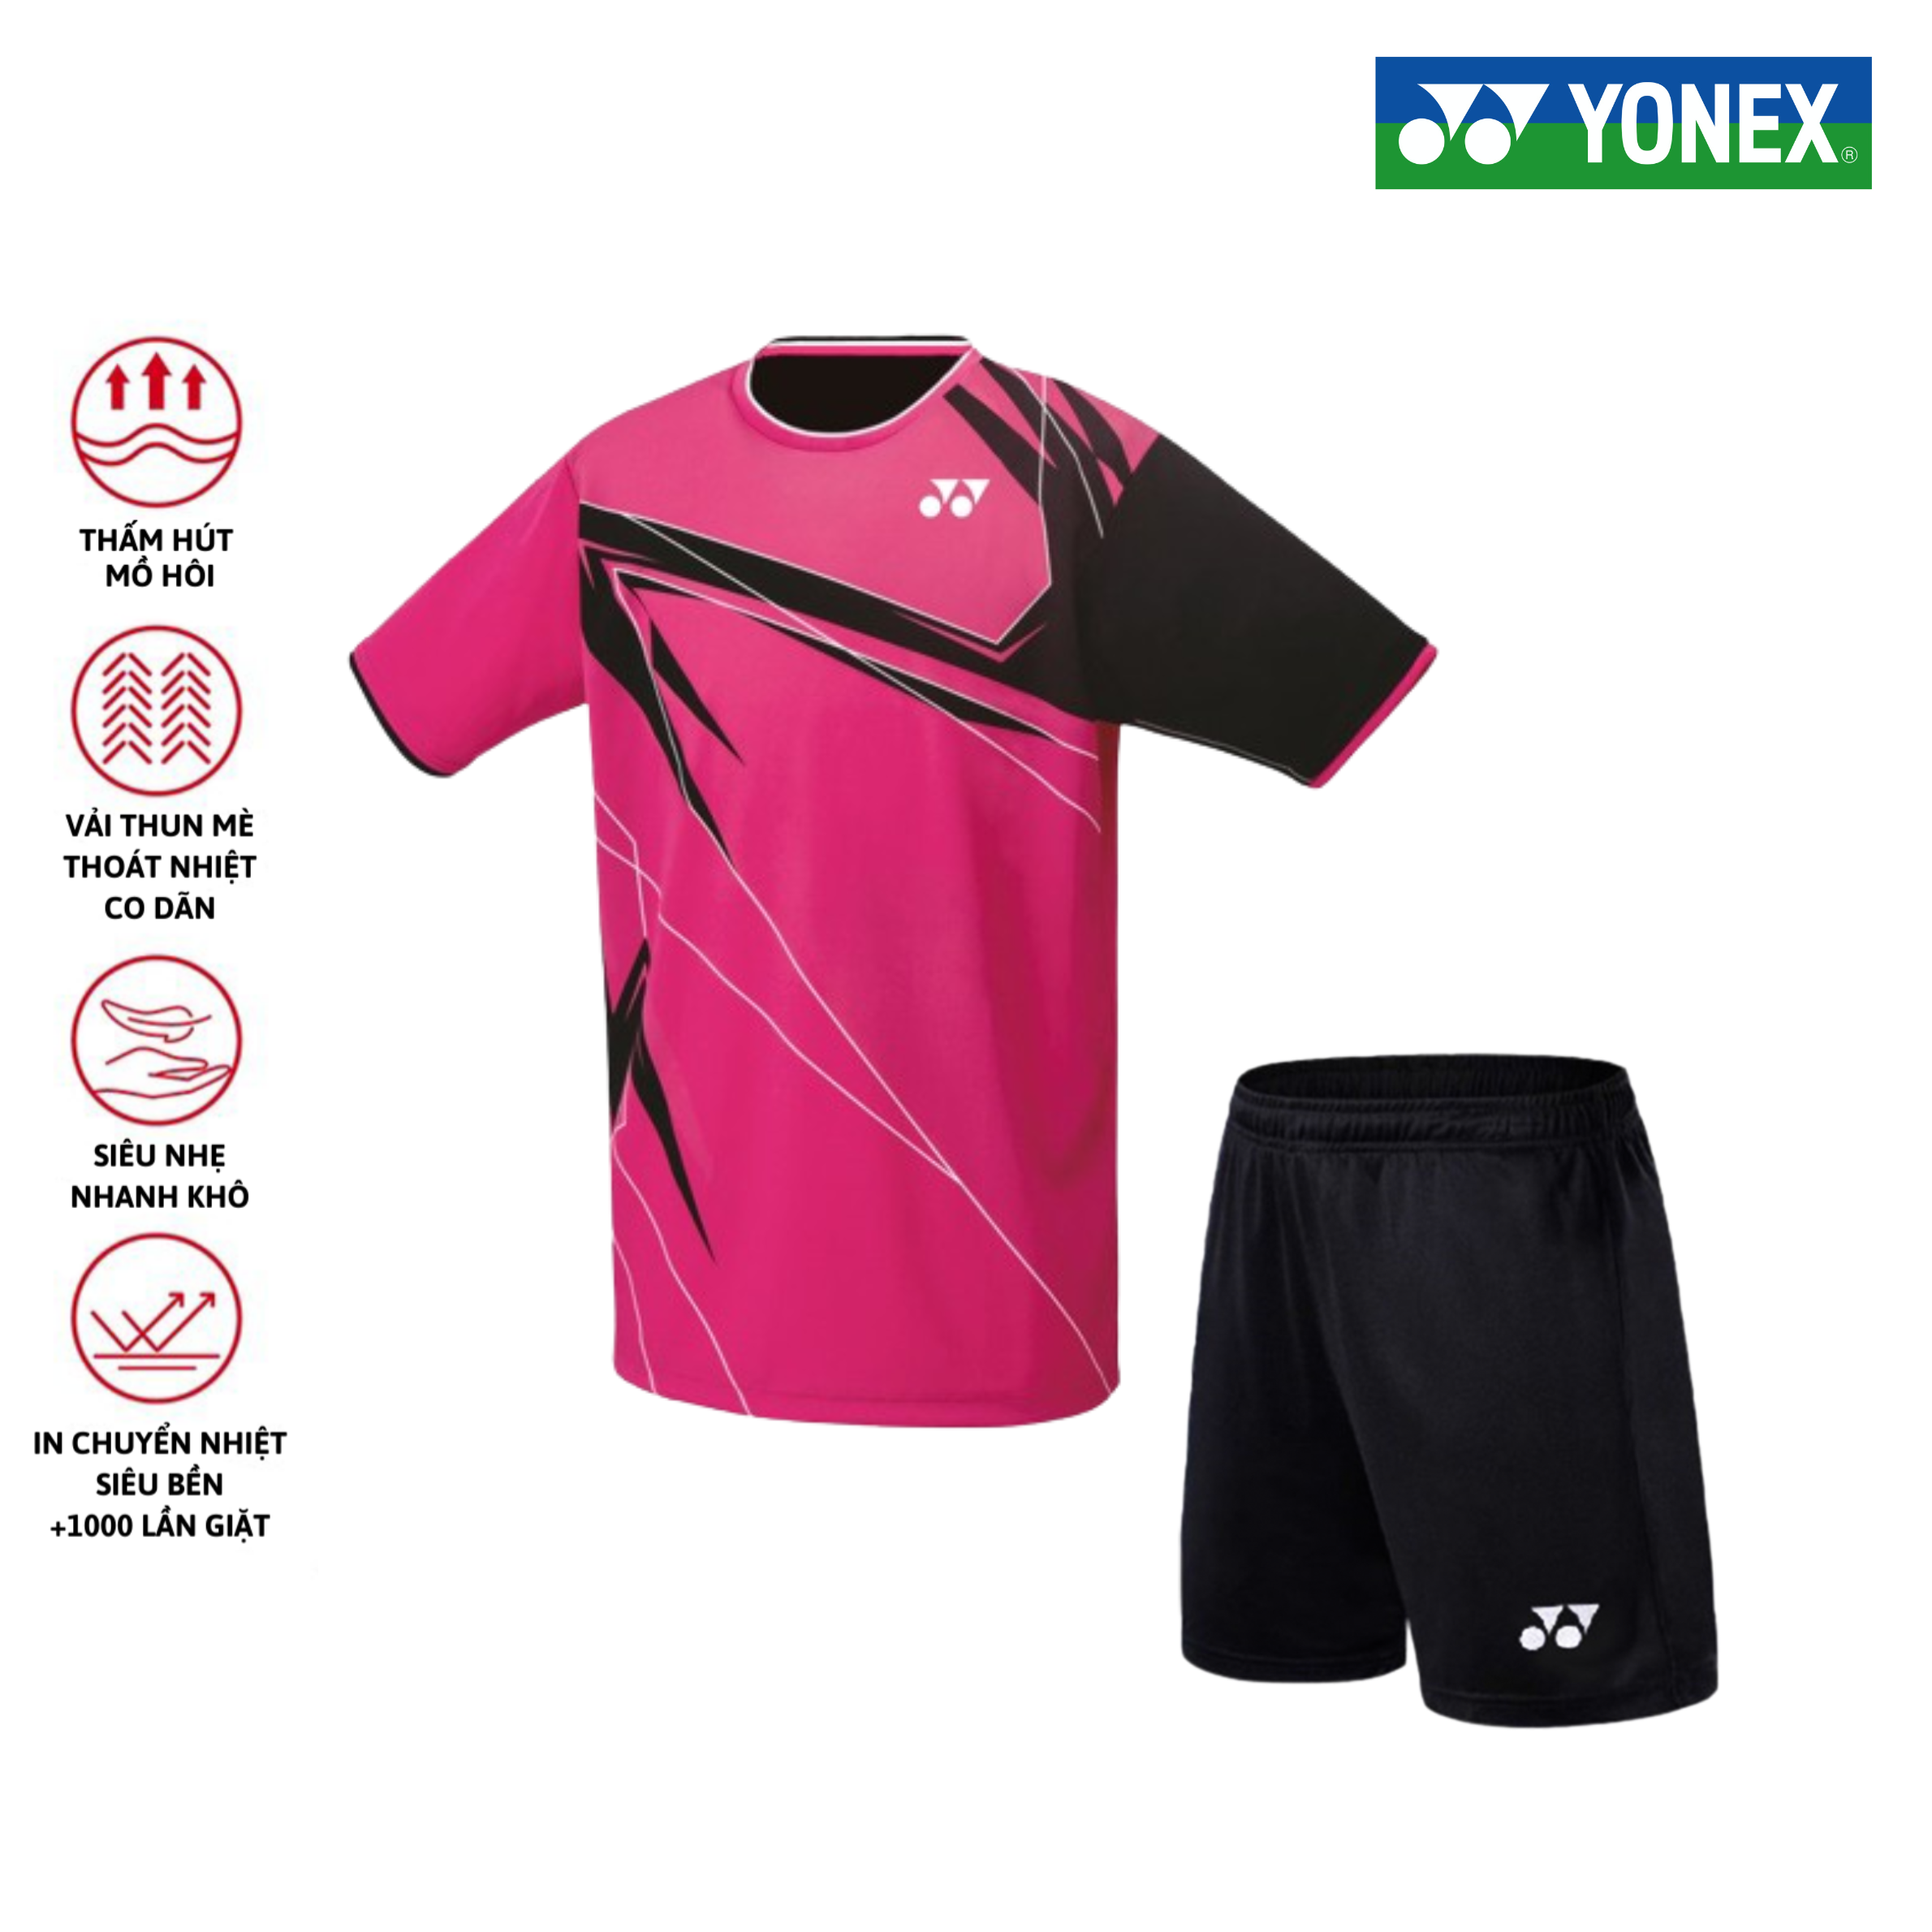 Áo cầu lông, quần cầu lông Yonex chuyên nghiệp mới nhất sử dụng tập luyện và thi đấu cầu lông A467